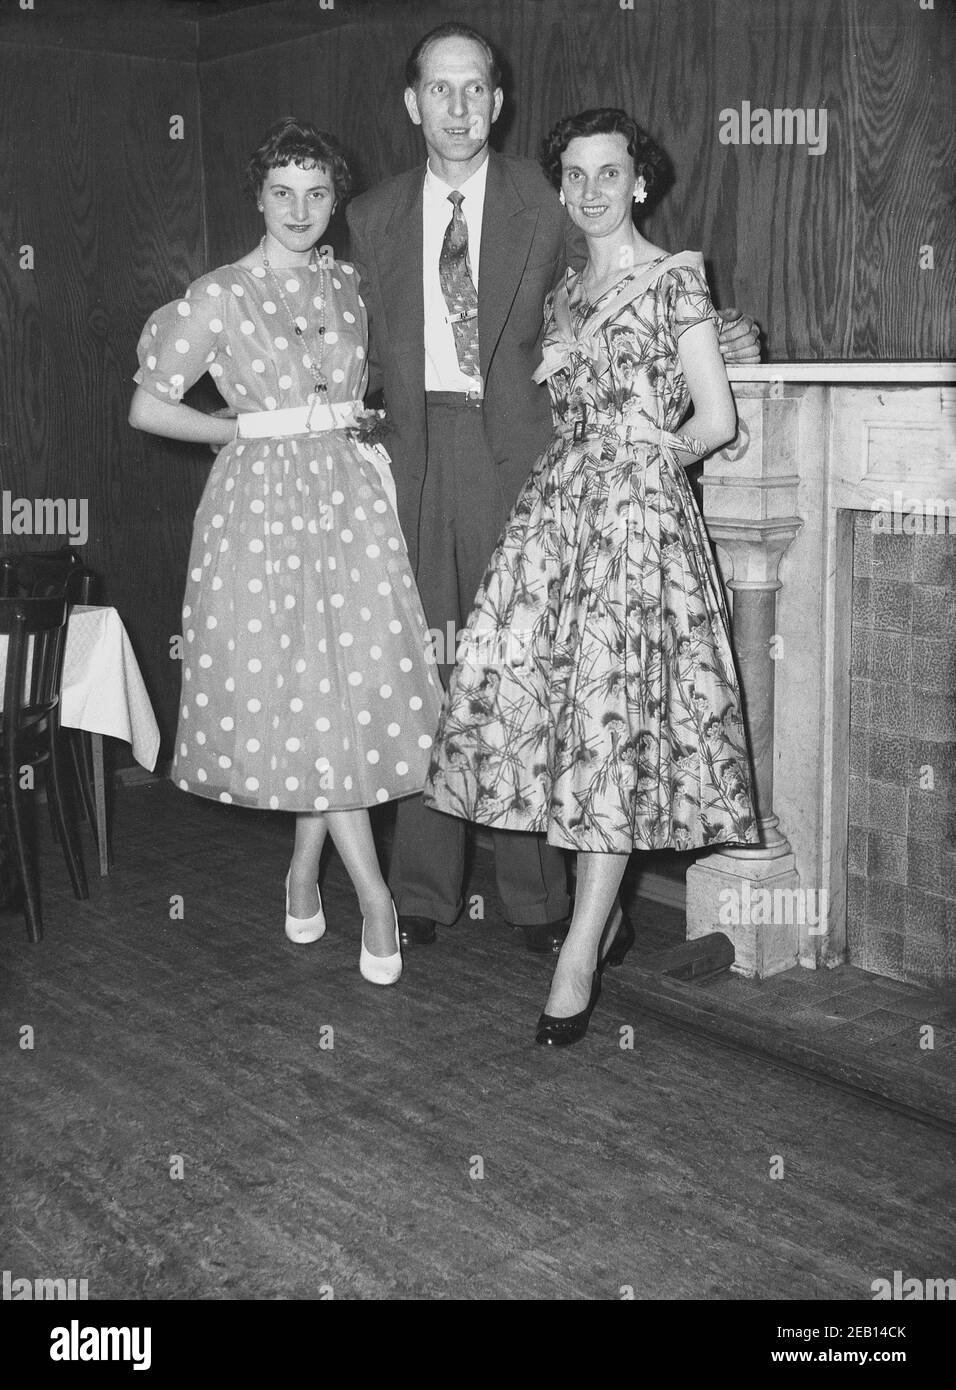 1950s, historische, junge Dame in einem gefleckten oder gepunkteten Kleid modisch in dieser Zeit steht für ein Bild mit einem Paar bei ihrem Geburtstag Pary in einem Hotel Veranstaltungsraum, England, Großbritannien. Stockfoto